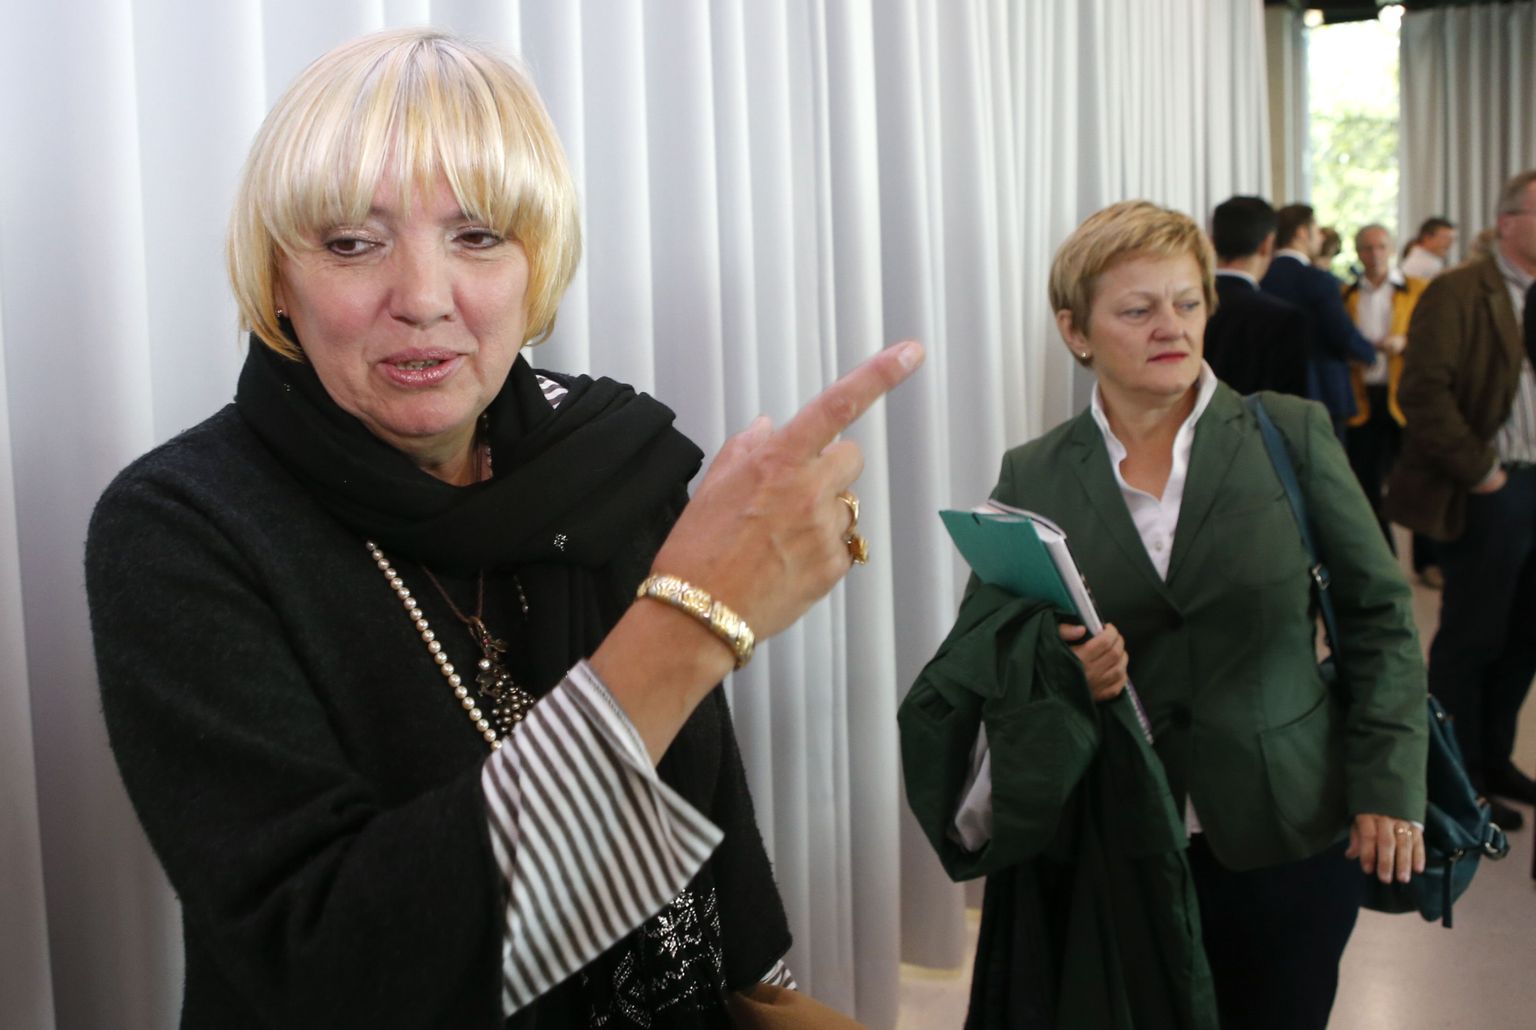 Roheliste Partei juhtfiguuride hulka kuulunud Claudia Roth (vasakul) ja  Renate Künast teatas pärast üldvalimisi, et astuvad tagasi.